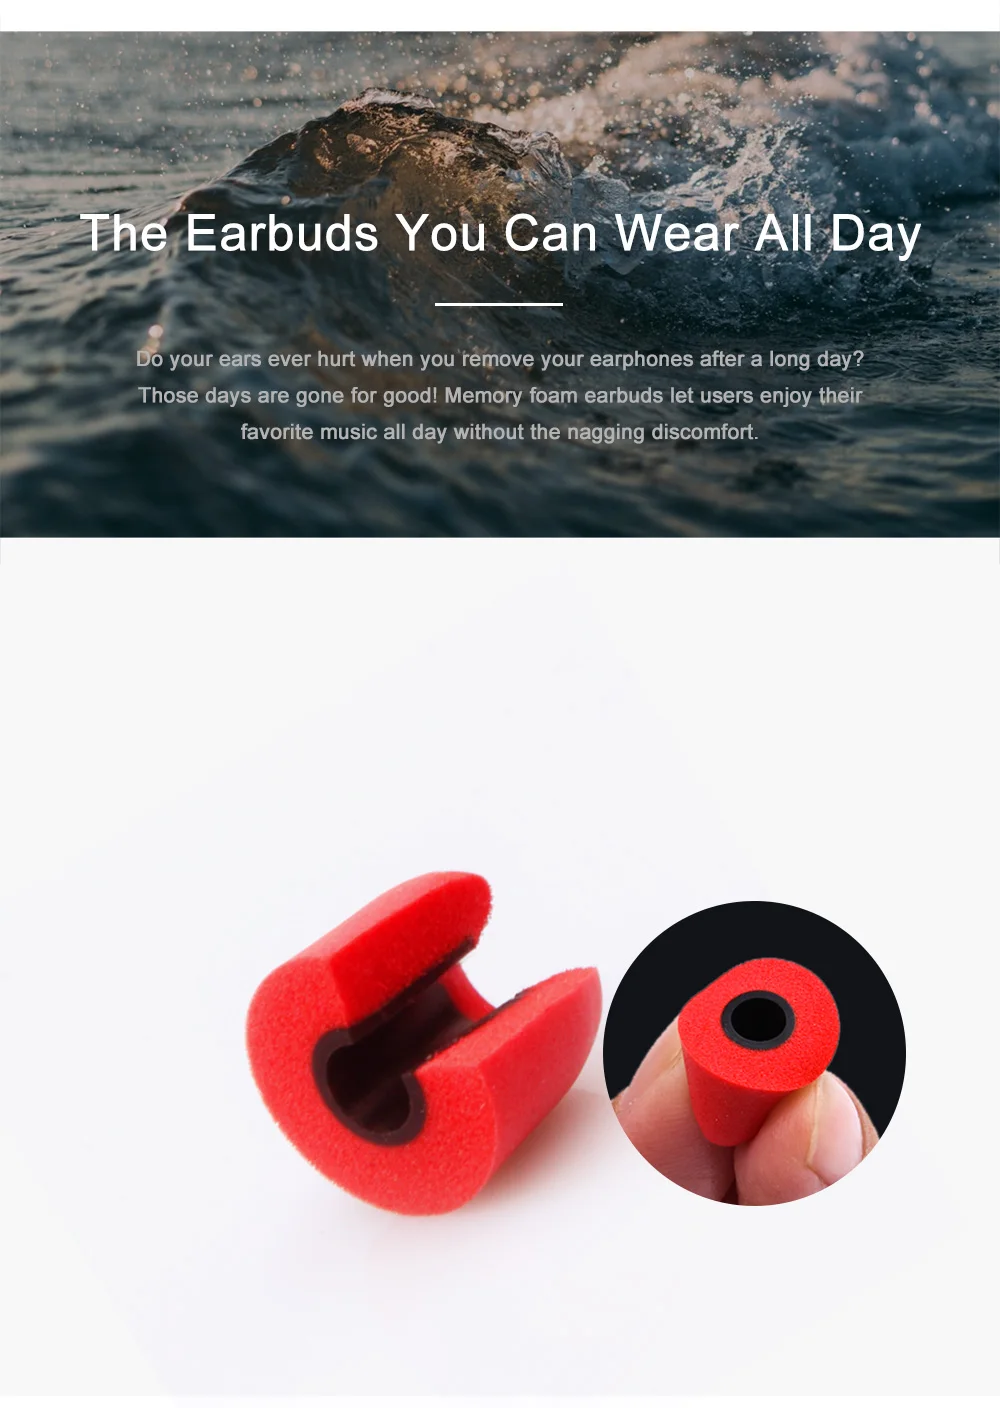 Original Memory Foam Ear Tips | AstroSoar Noise Isolating Earbud Earpad for Earphones | astrosoar.com